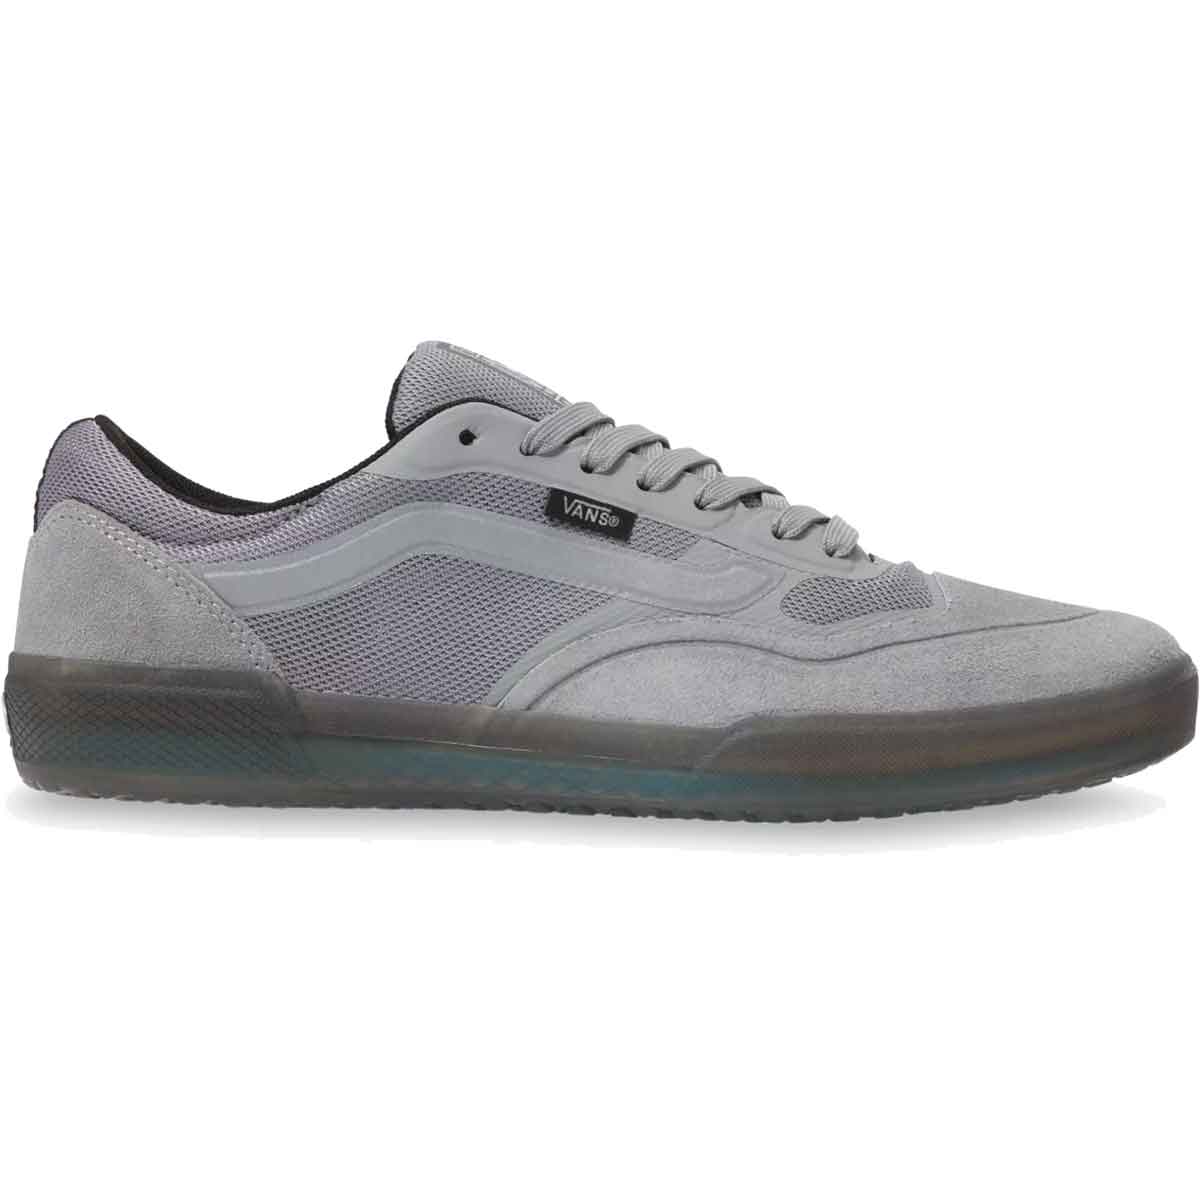 grey van shoes